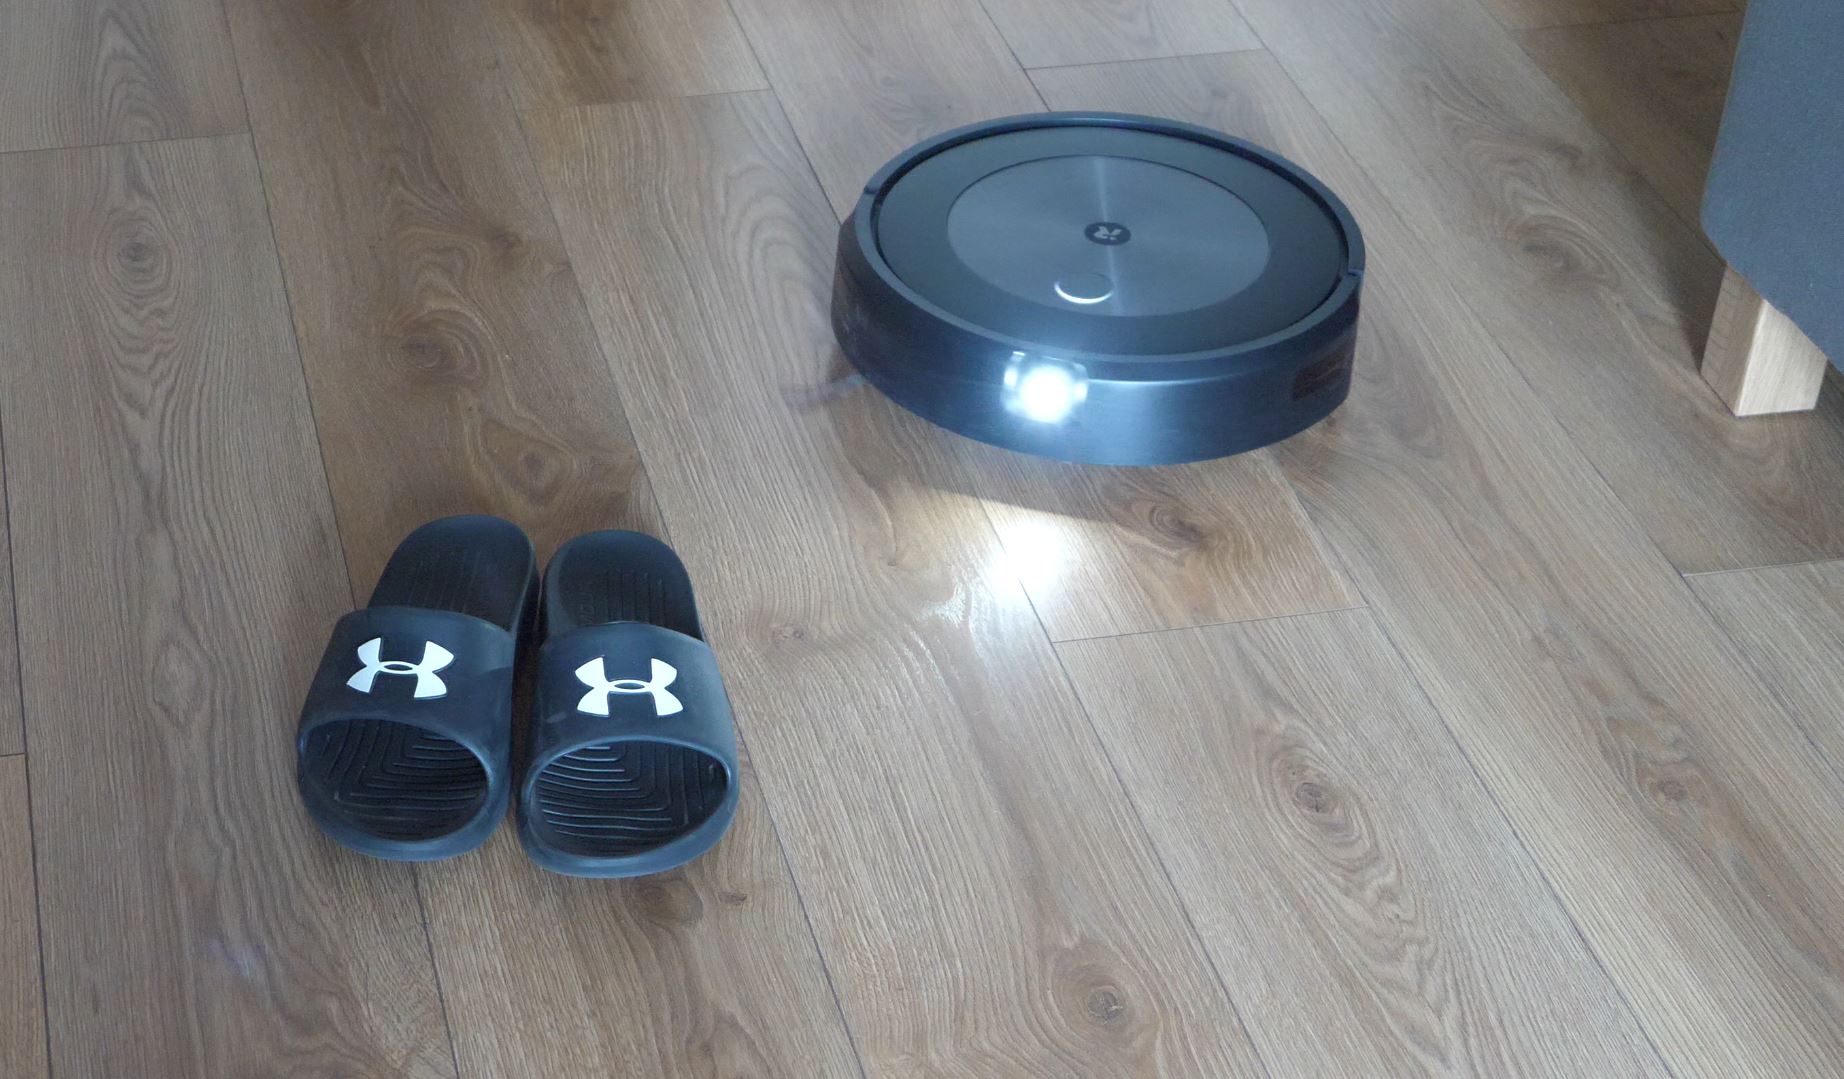 identyfikuje przeszkody - iRobot Roomba j7